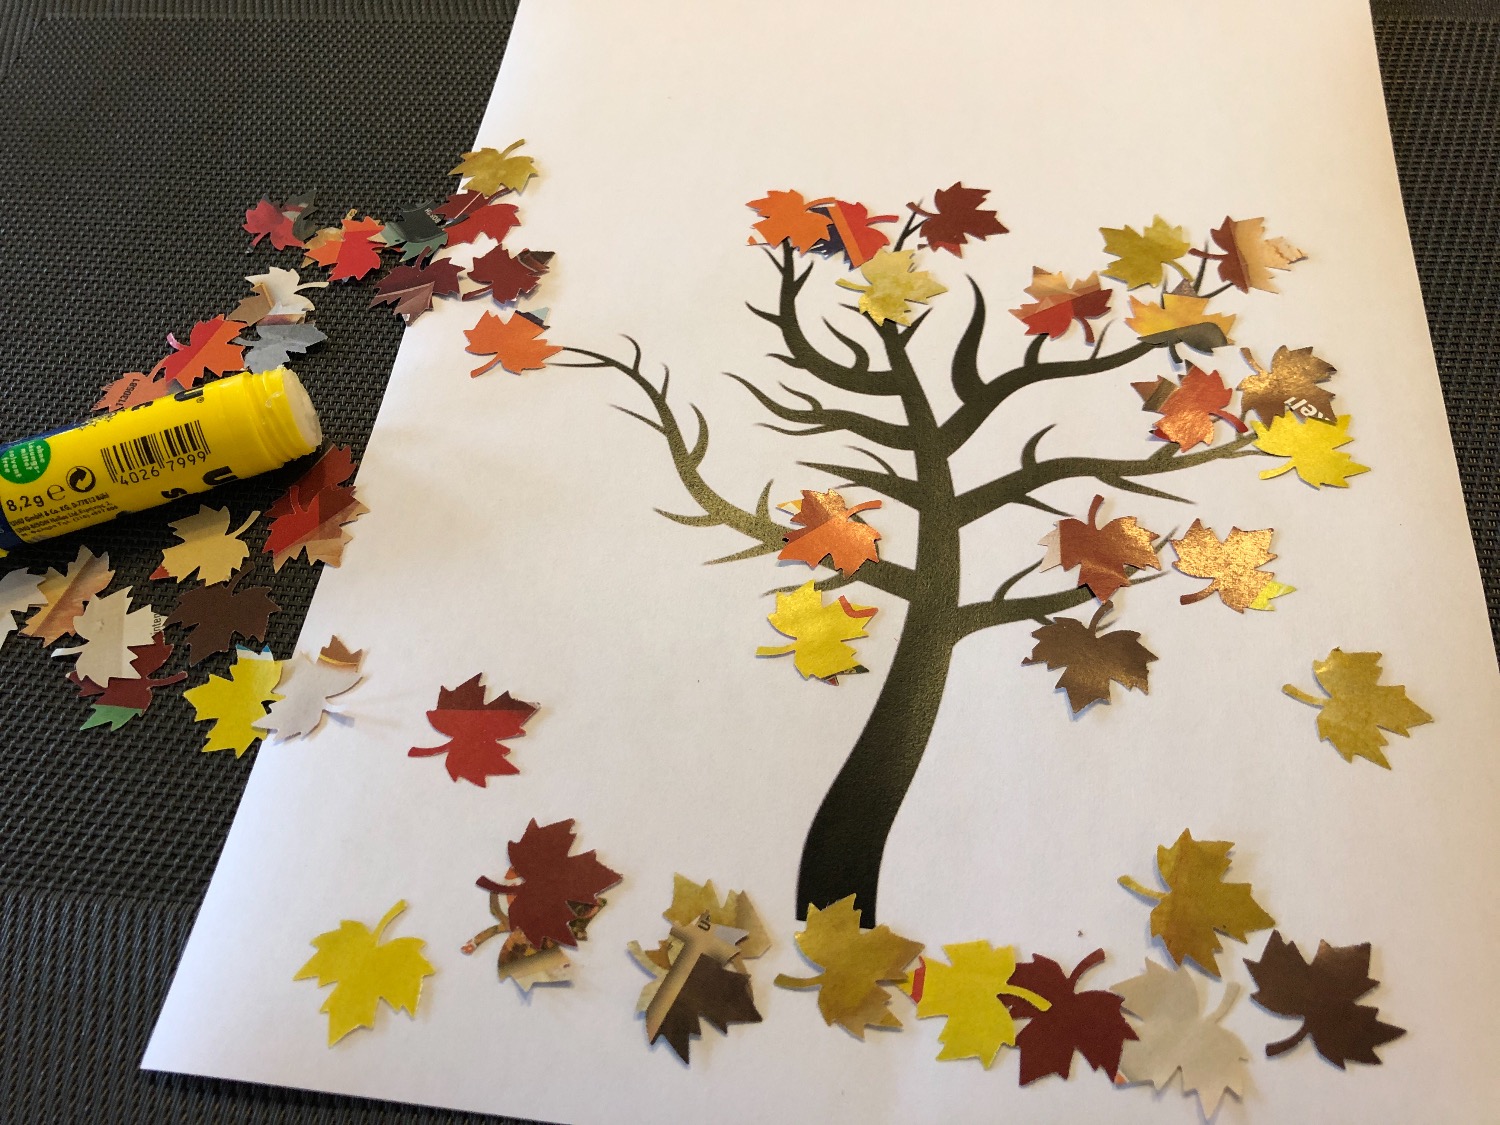 Titelbild zur Idee für die Beschäftigung mit Kindern 'Herbstbaum mit ausgestanzten Blättern (3 Ideen)'